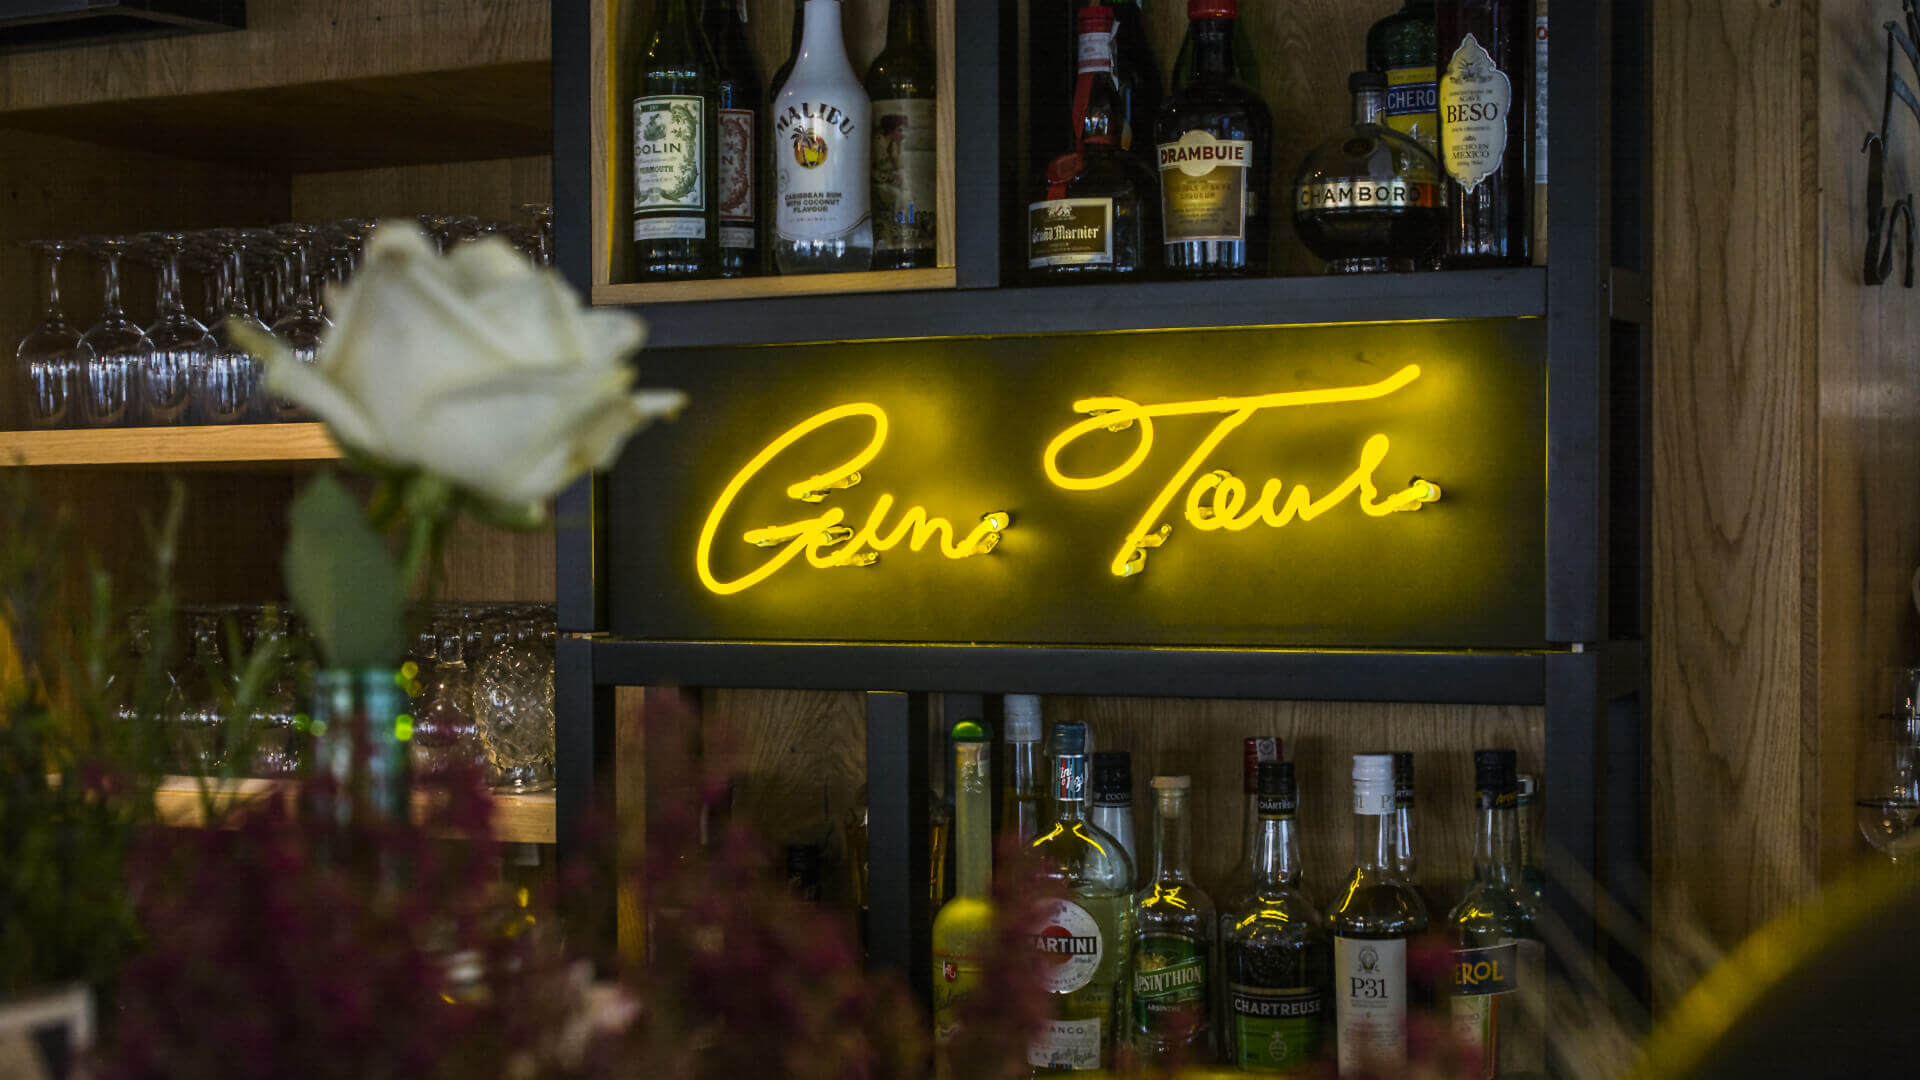 Gintur Gin tour - Gin-tour-neon-dietro-il-bar-ristorante-neon-sul-muro-sotto-illuminato-neon-azienda-logo-neon-sul-polacco-tra-bottiglie-caffetteria10-gdansk (21) 